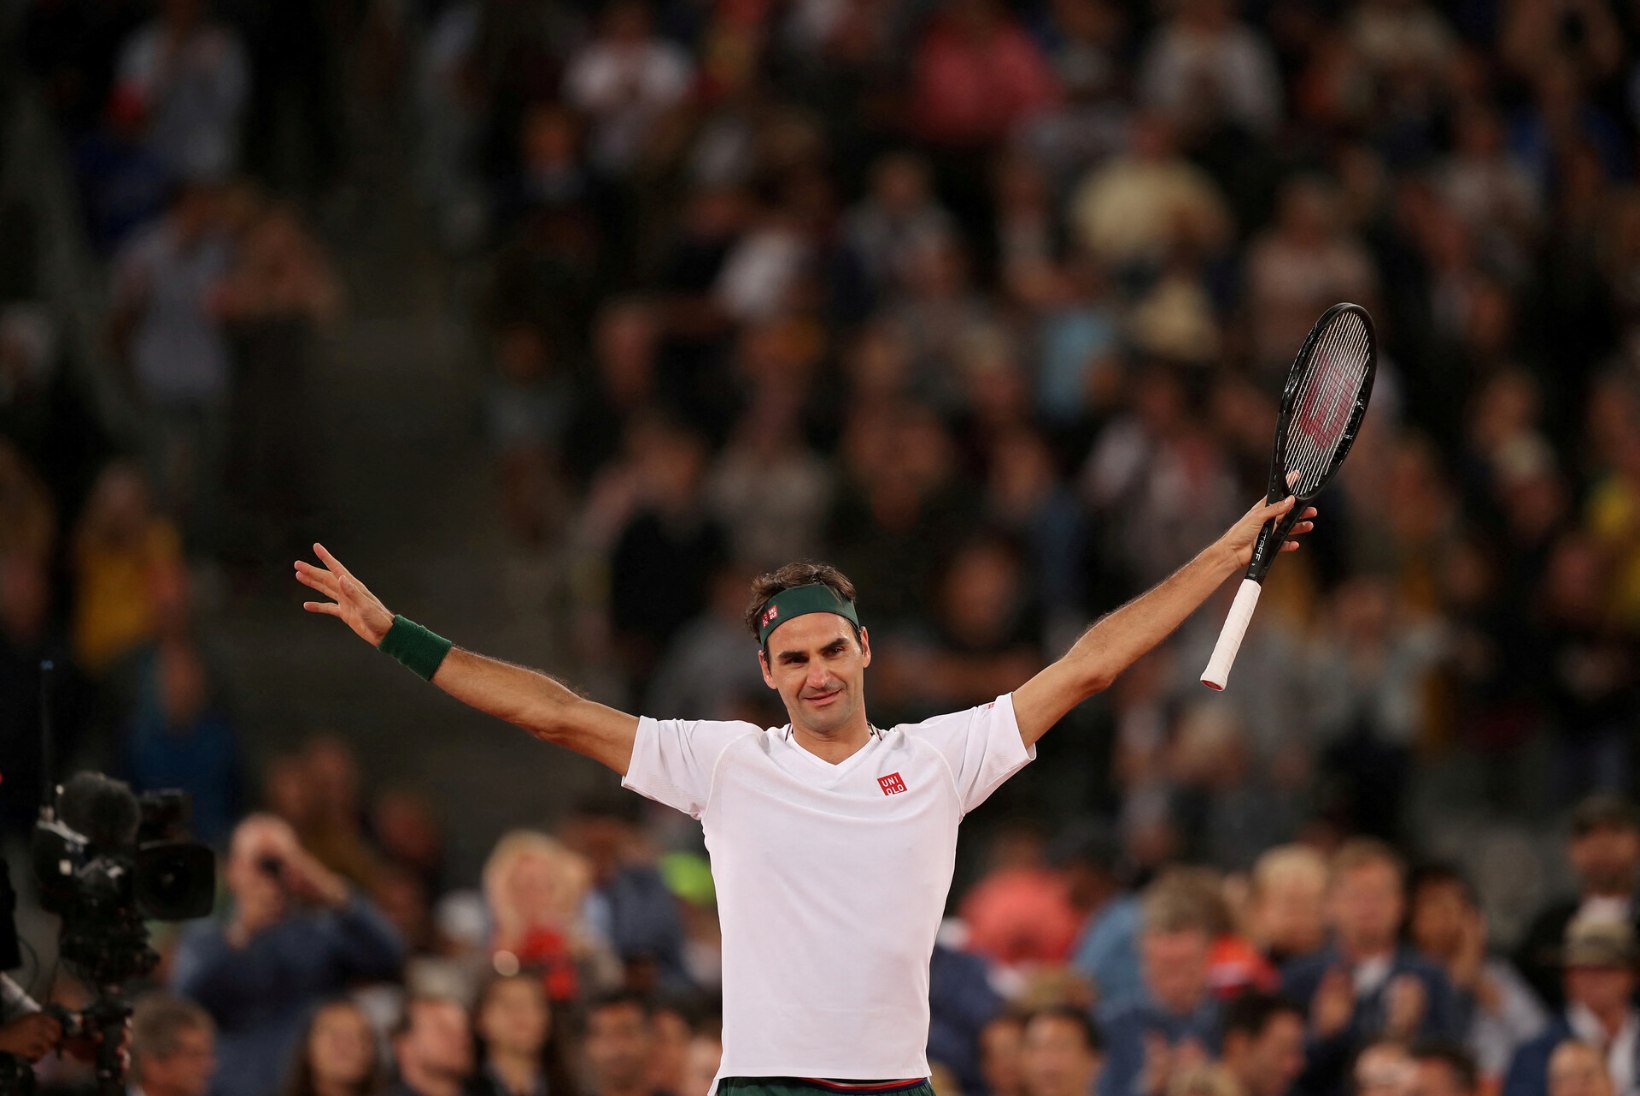 Roger Federer lõpetab karjääri: olen maailmas üks nendest, kellel on olnud kõige rohkem õnne